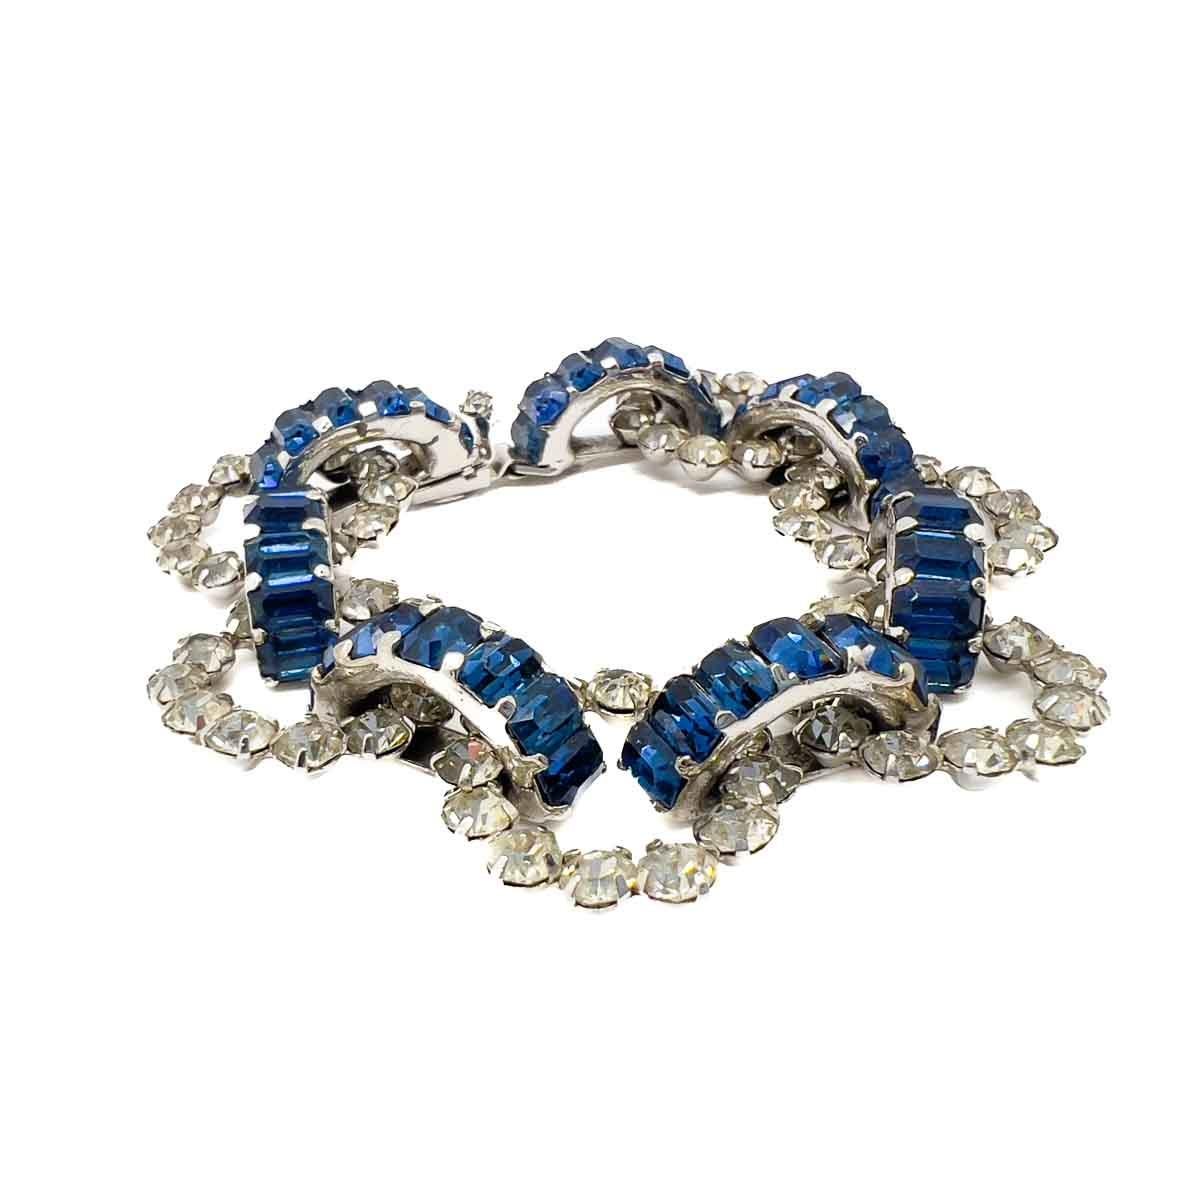 Ein wunderschönes Vintage Dior by Mitchel Maer Saphir-Armband. Dieses bezaubernde Armband mit Saphiren und Diamanten im Smaragdschliff ist der Inbegriff des Couture-Chics aus der Mitte des Jahrhunderts und steht für die wichtige Beziehung zwischen